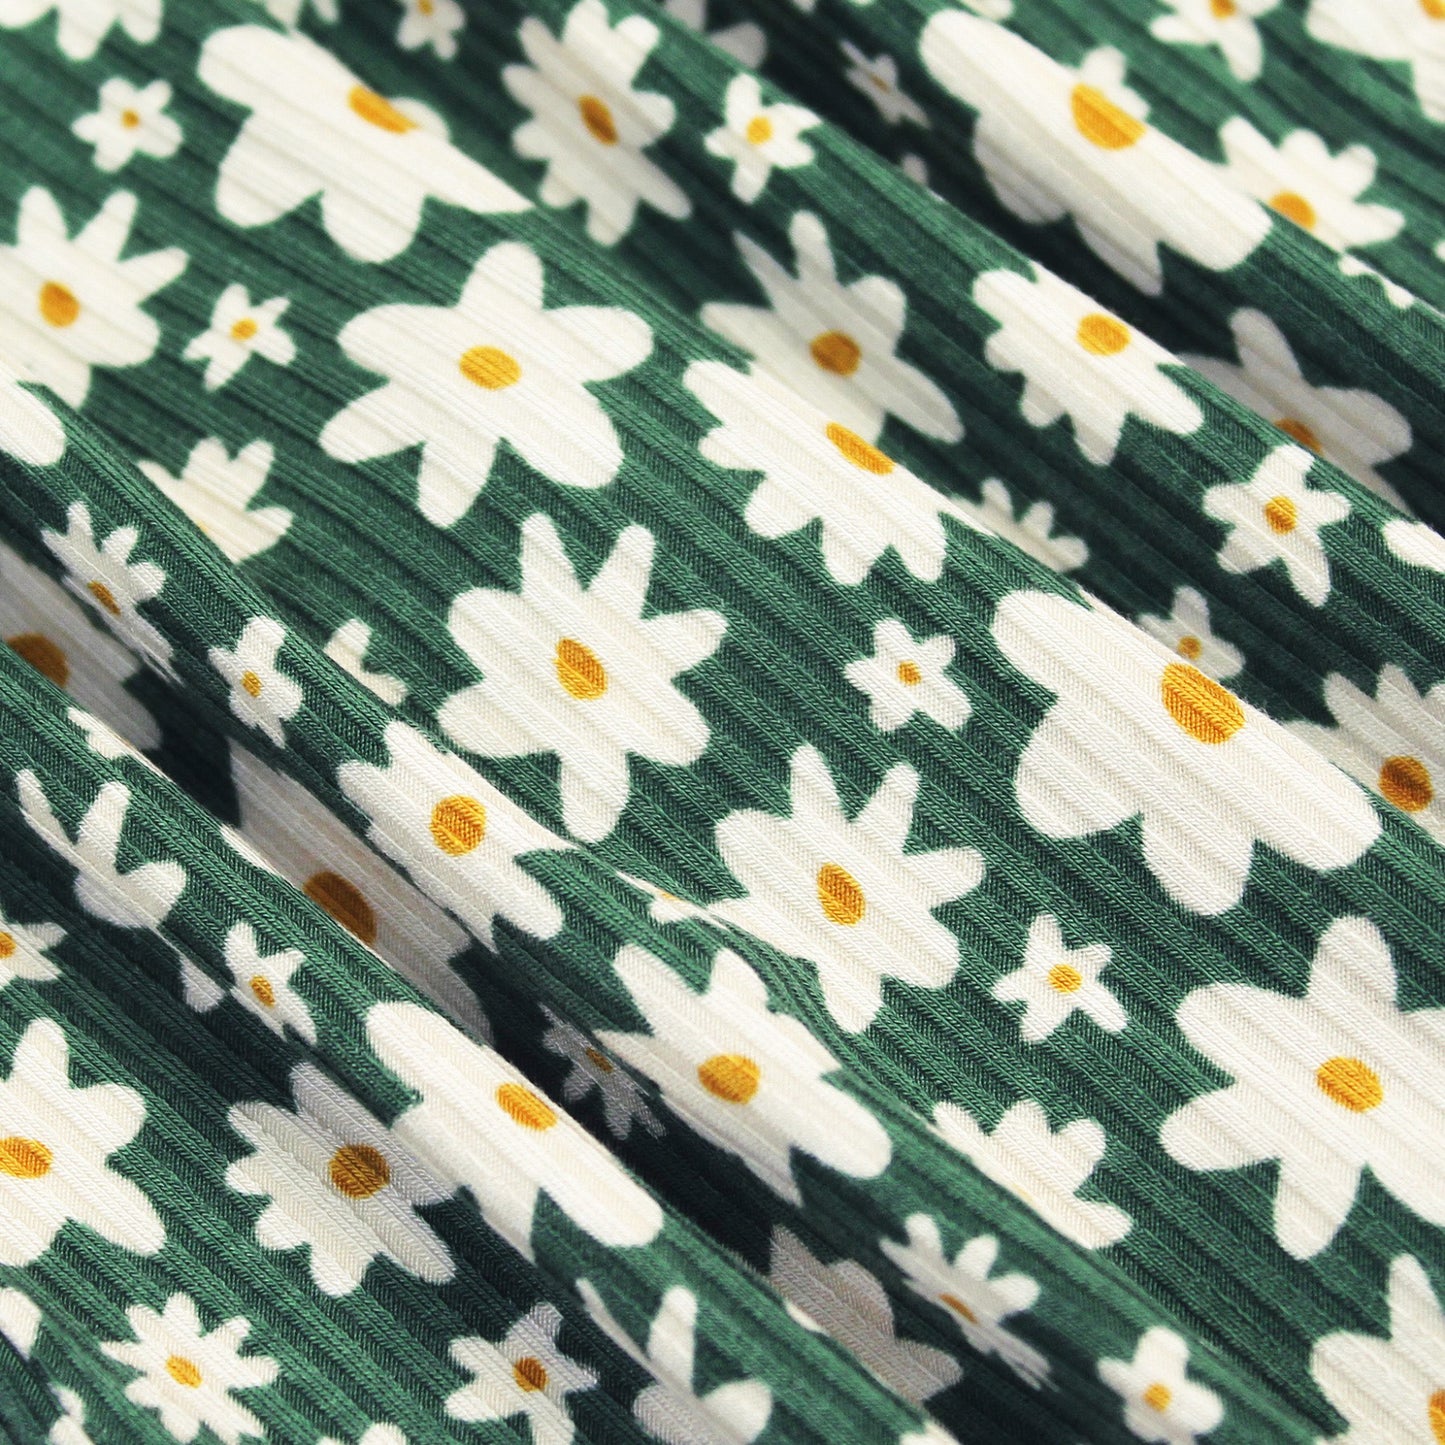 Green Floral Ribbed Pocket Dress